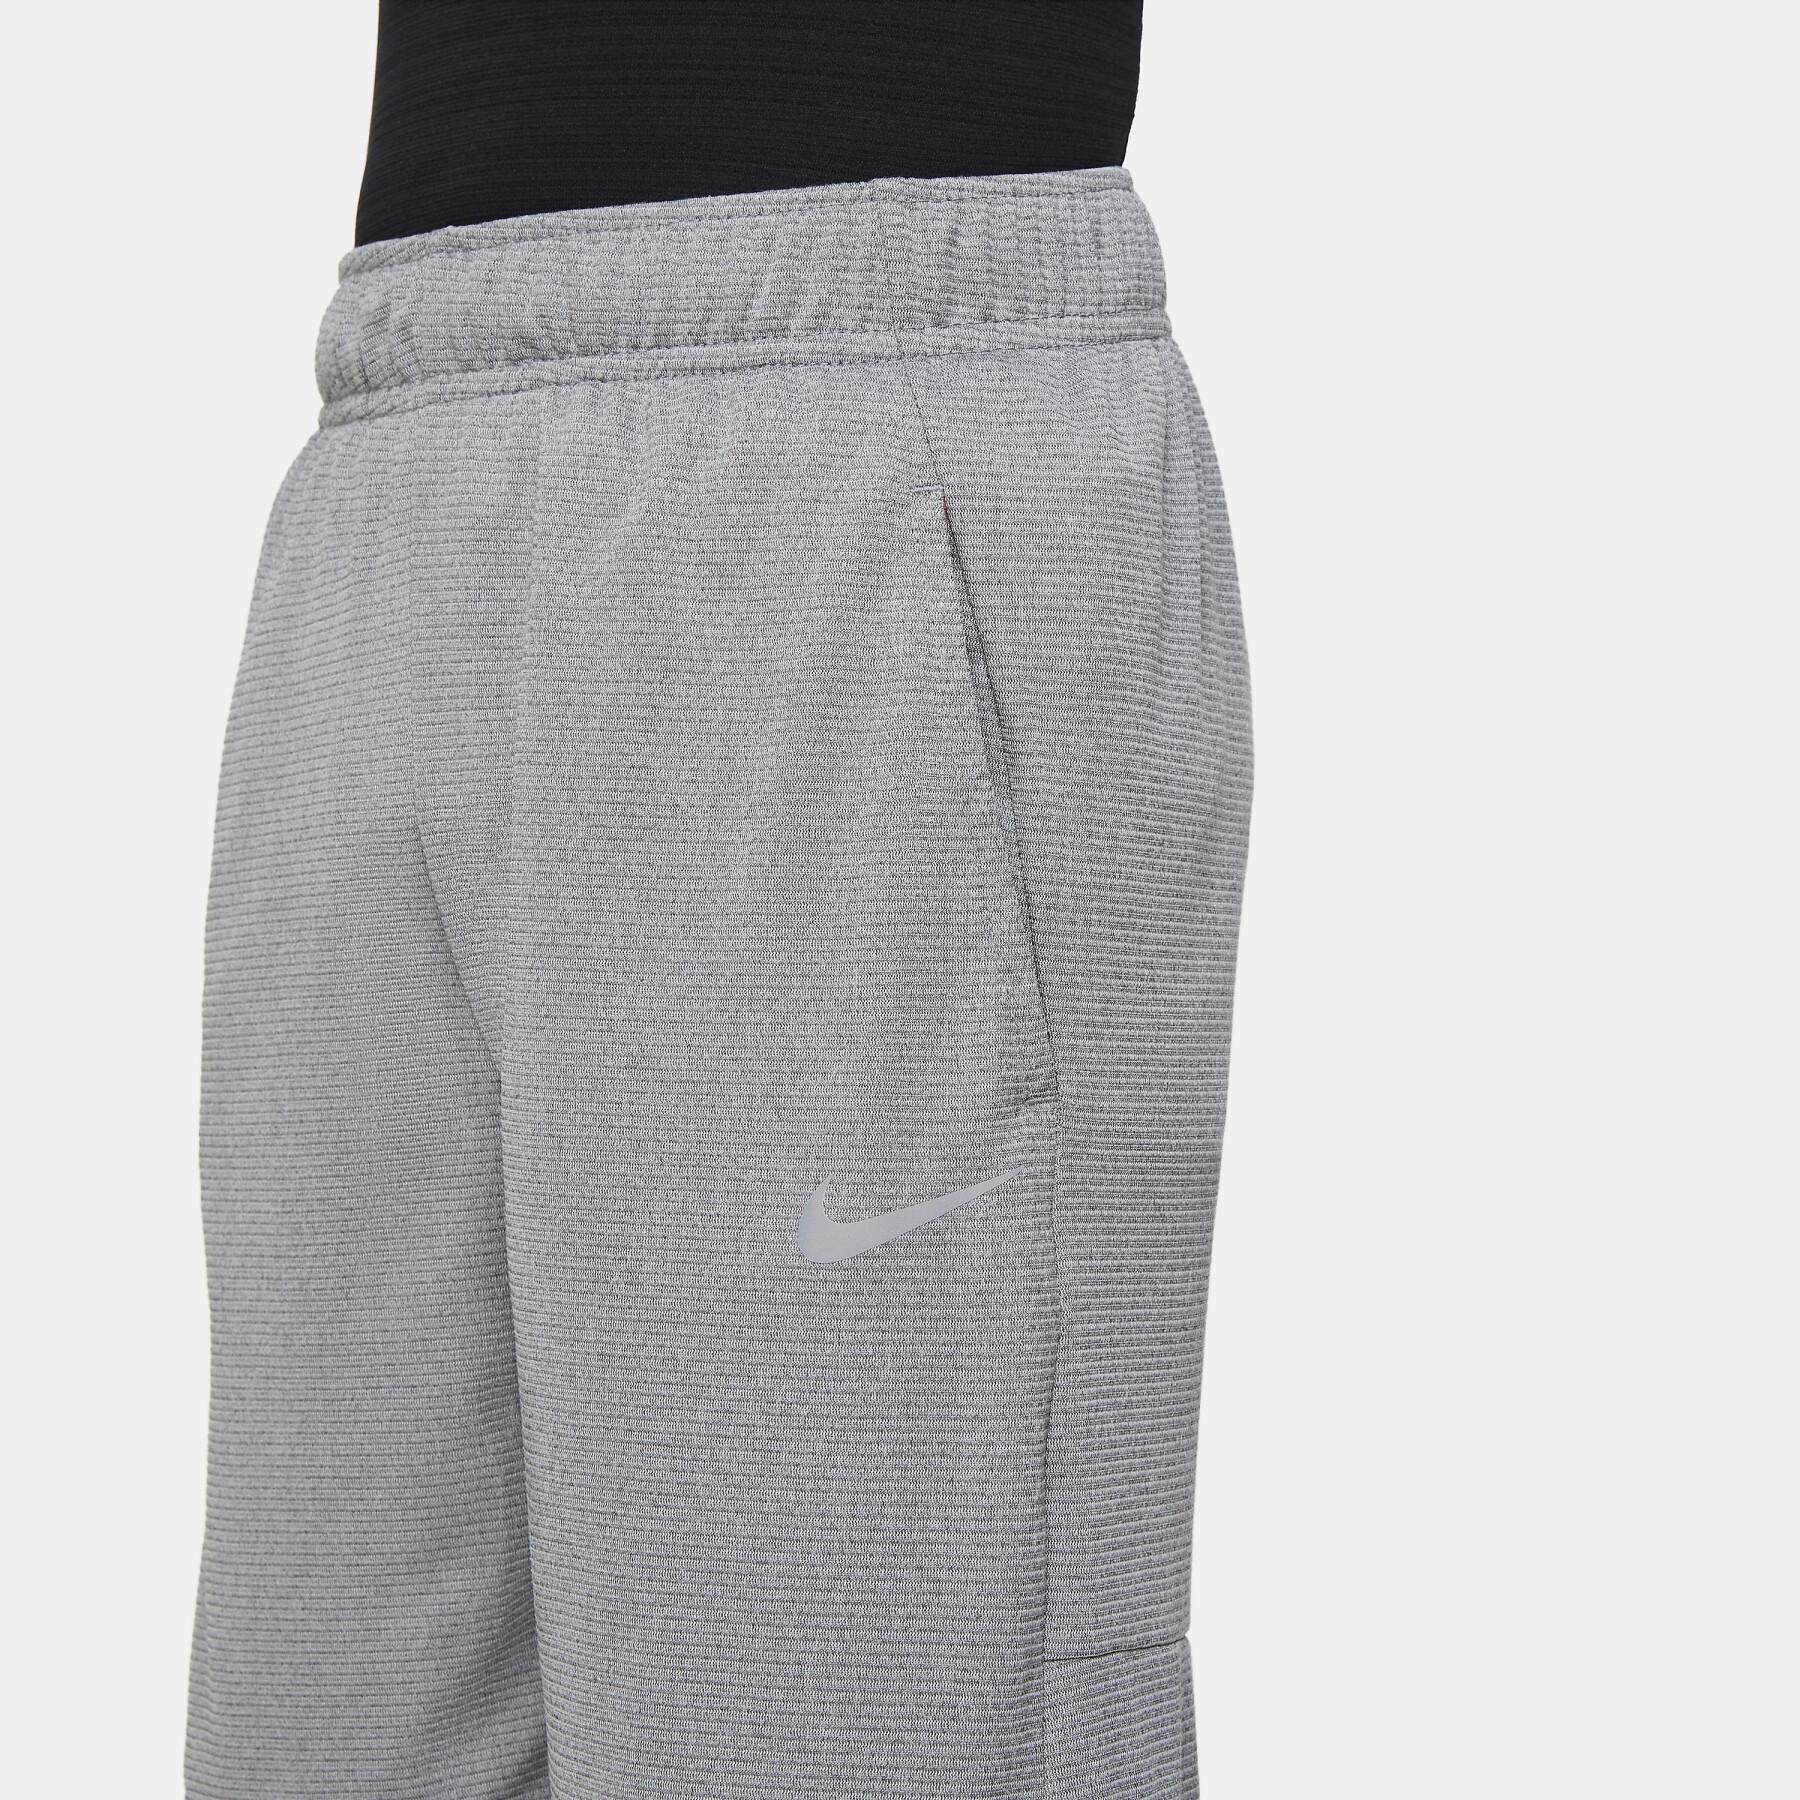 Pantalones cortos para niños Nike Poly +